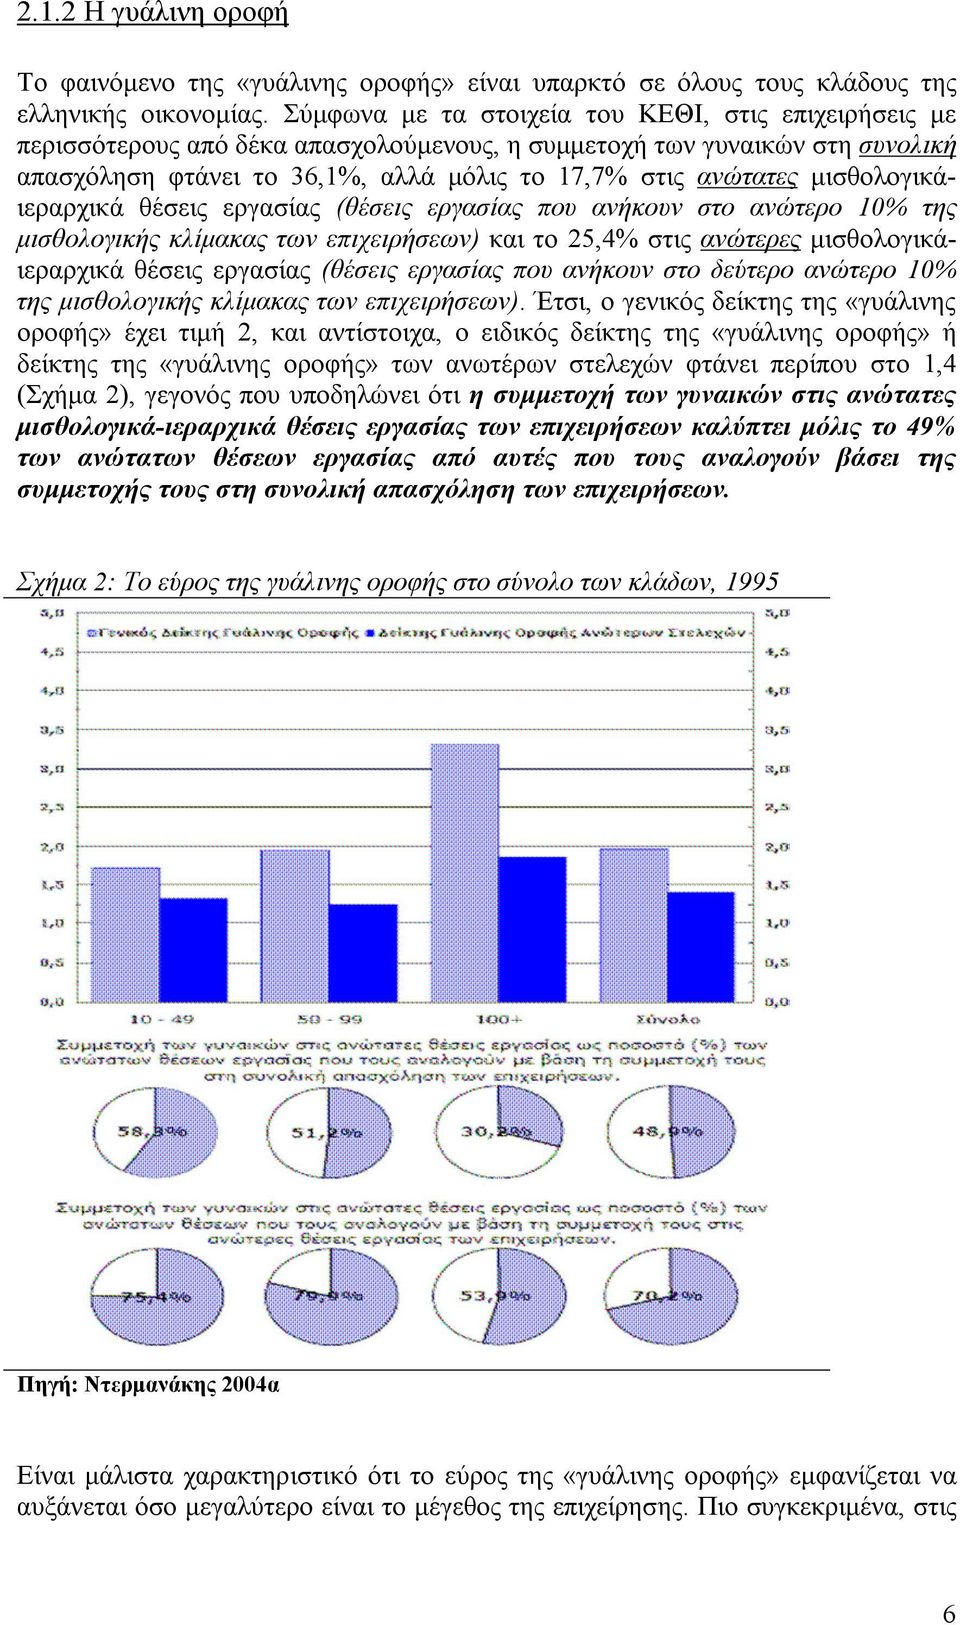 µισθολογικάιεραρχικά θέσεις εργασίας (θέσεις εργασίας που ανήκουν στο ανώτερο 10% της µισθολογικής κλίµακας των επιχειρήσεων) και το 25,4% στις ανώτερες µισθολογικάιεραρχικά θέσεις εργασίας (θέσεις